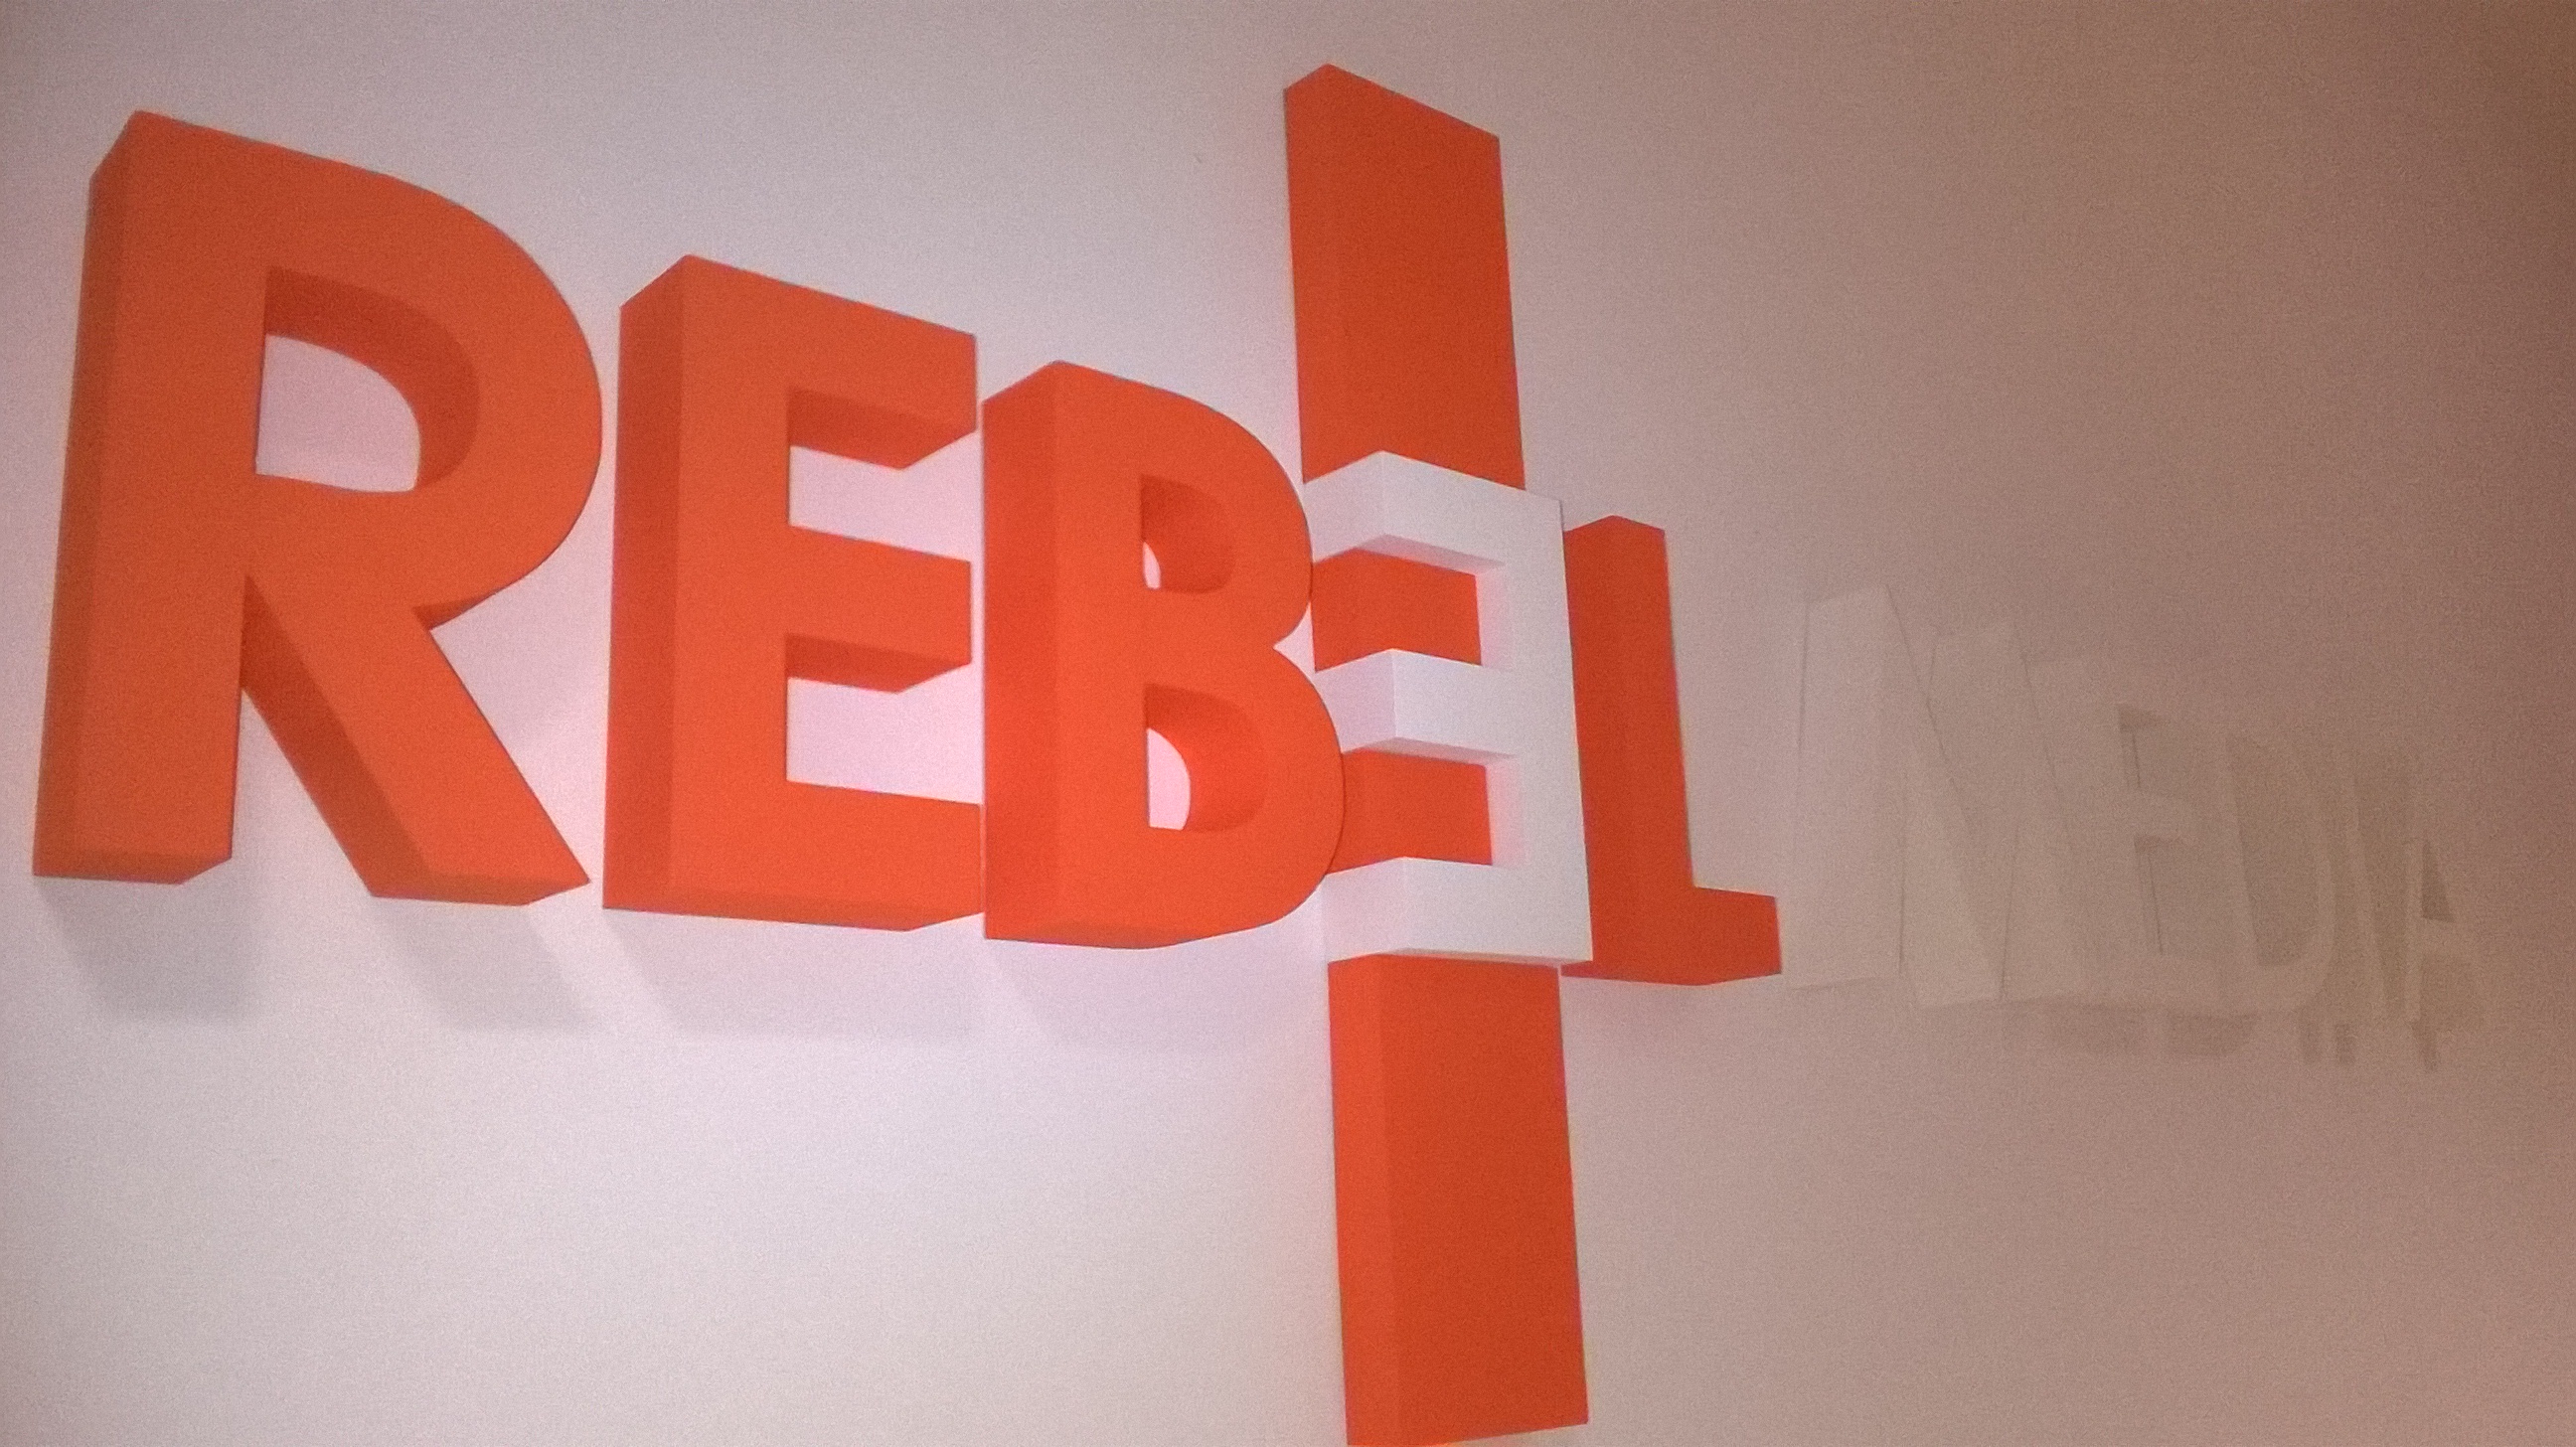 logo rebel